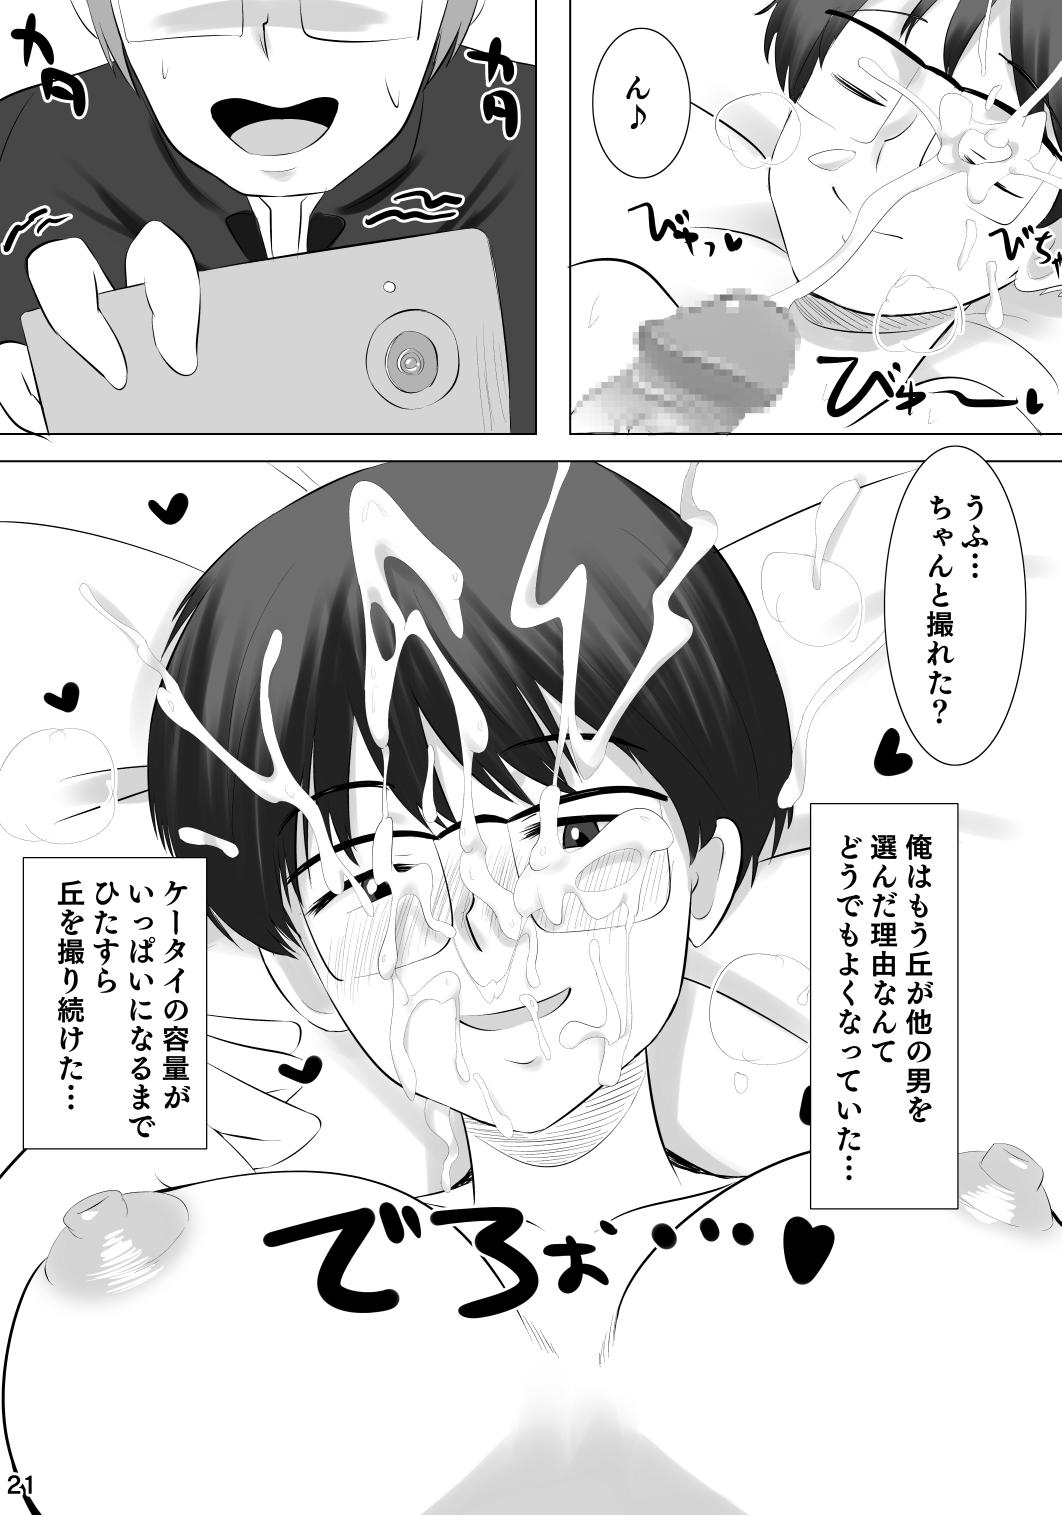 Story Kanojo ga Hoka no Otoko wo Eranda Riyuu X - Nazo no kanojo x Swing - Page 22